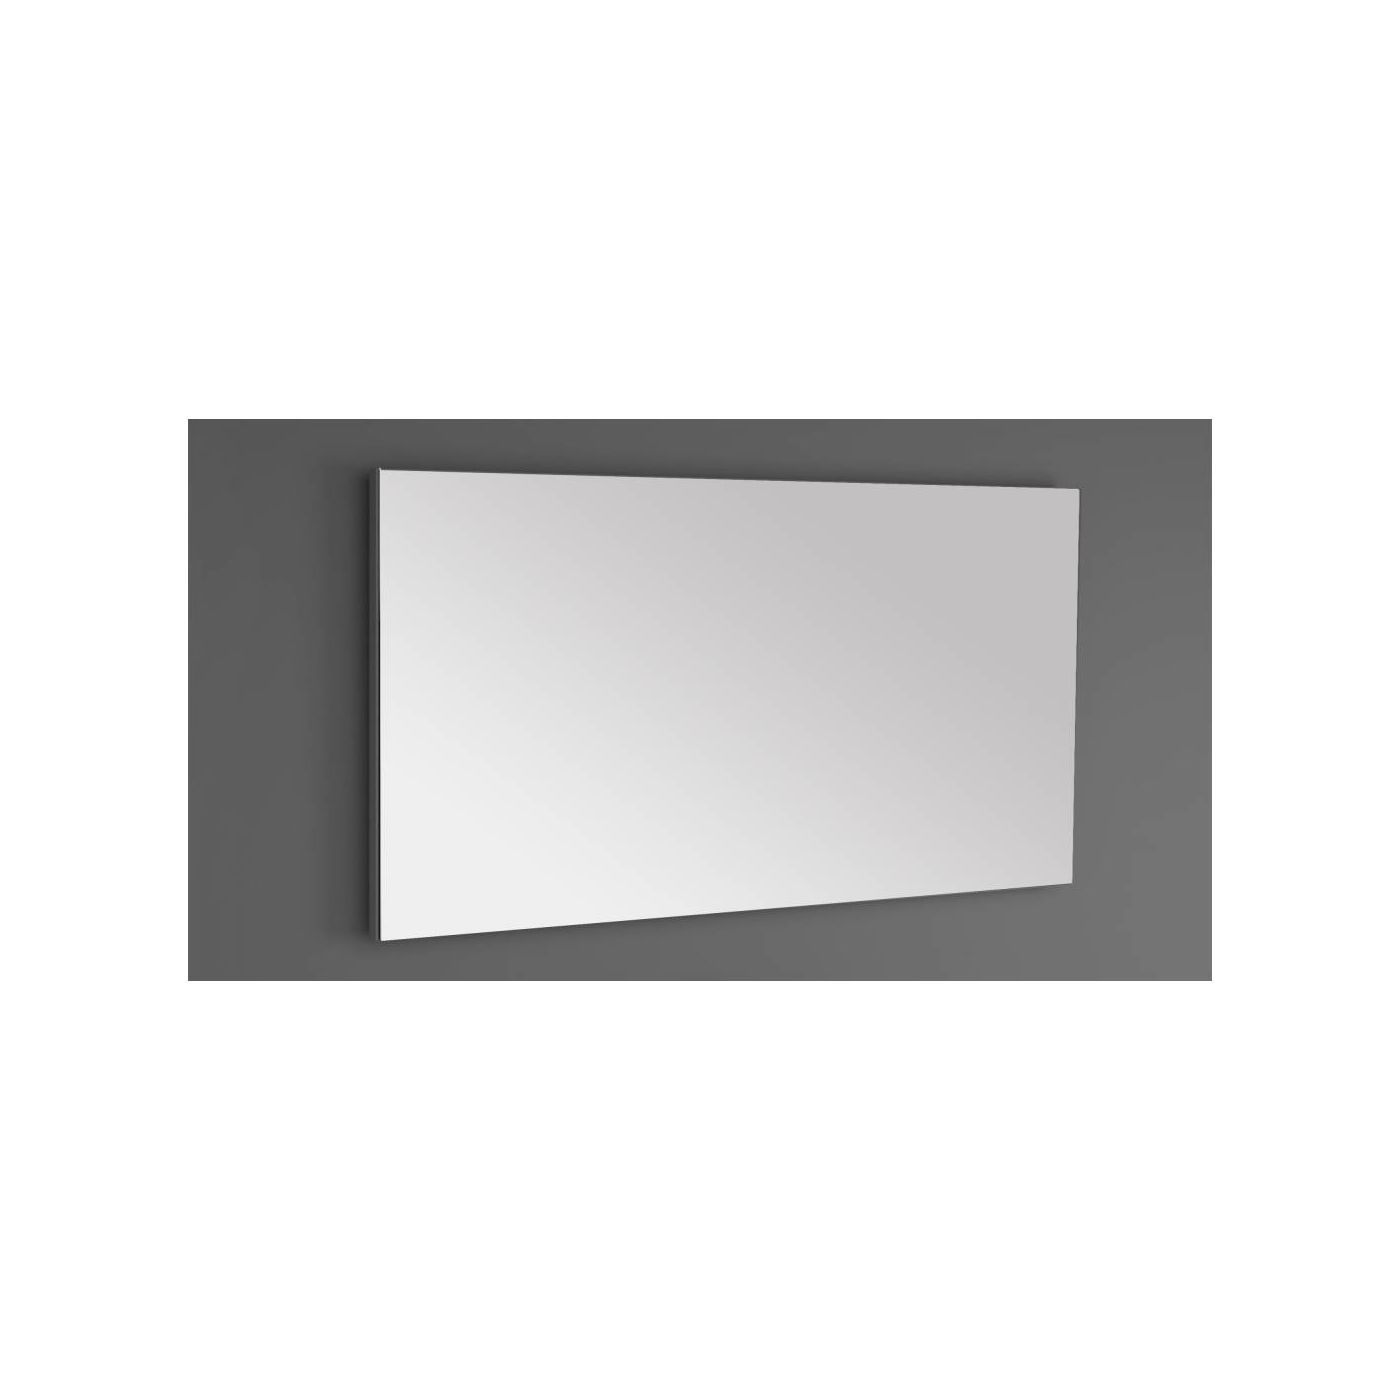 Neuer standaard spiegel met spiegelverwarming 140x70